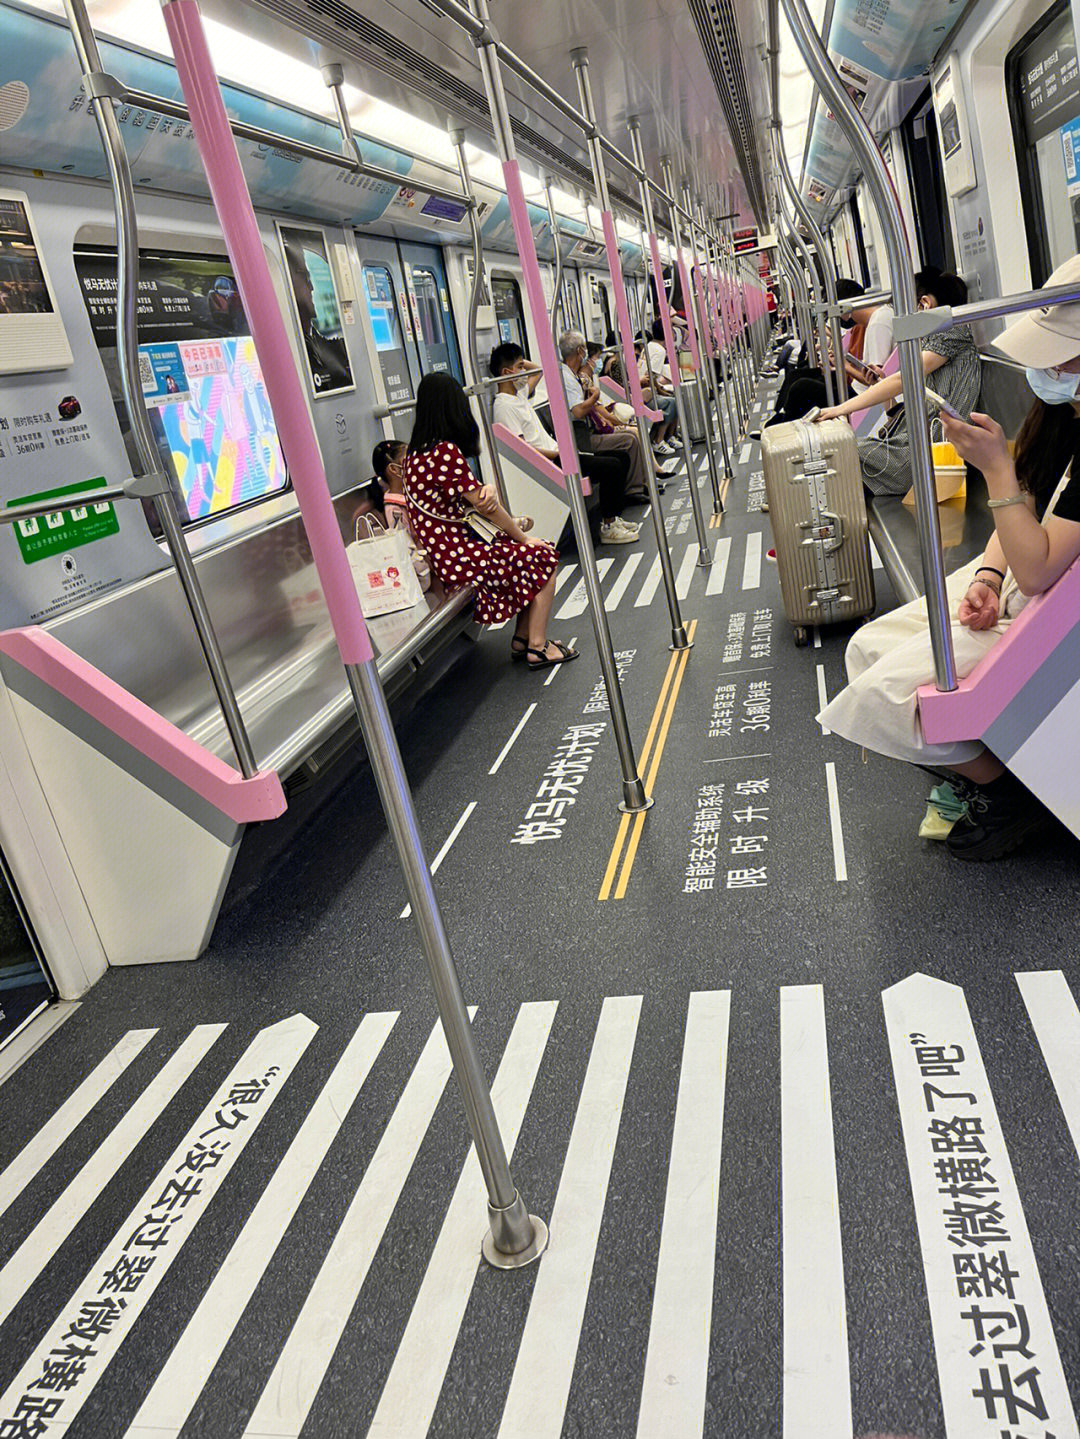 武汉地铁2号线车厢图片